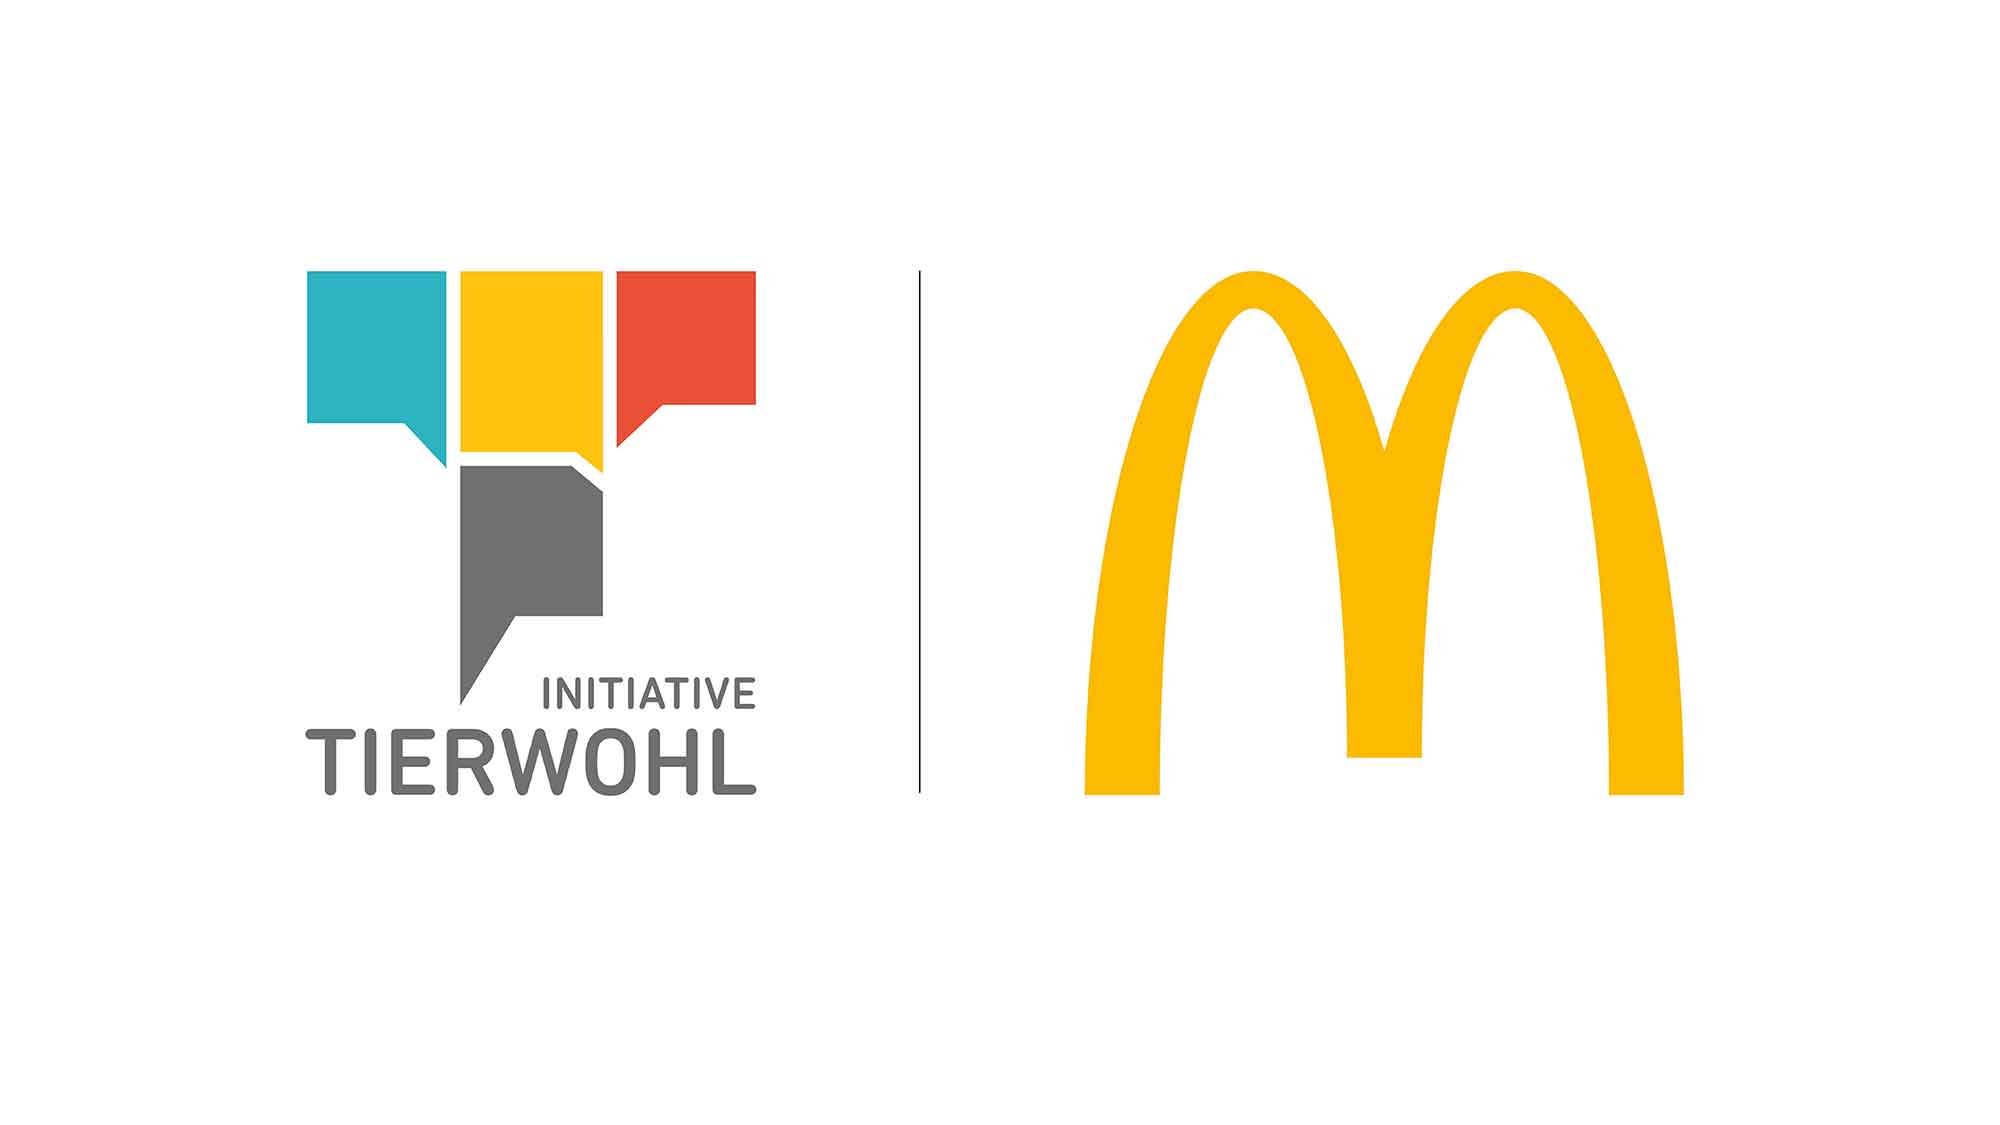 Mehr Nachhaltigkeit und Tierwohl: McDonald's setzt auf starke Partnerschaft mit der deutschen Landwirtschaft